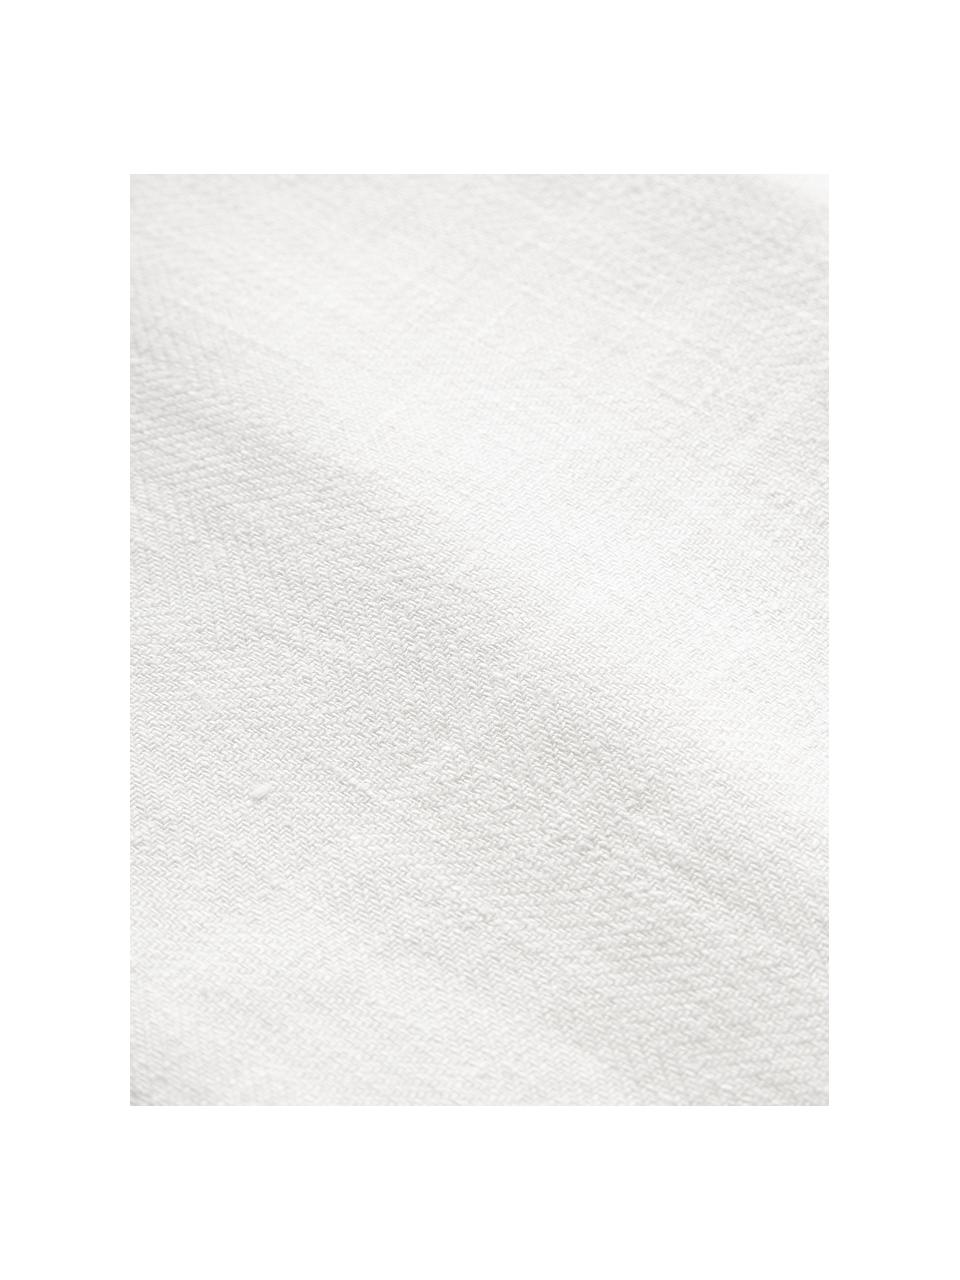 Leinen-Tischläufer Vilnia mit Umkettelung, 100 % Leinen, Weiß, Schwarz, B 50 x L 150 cm